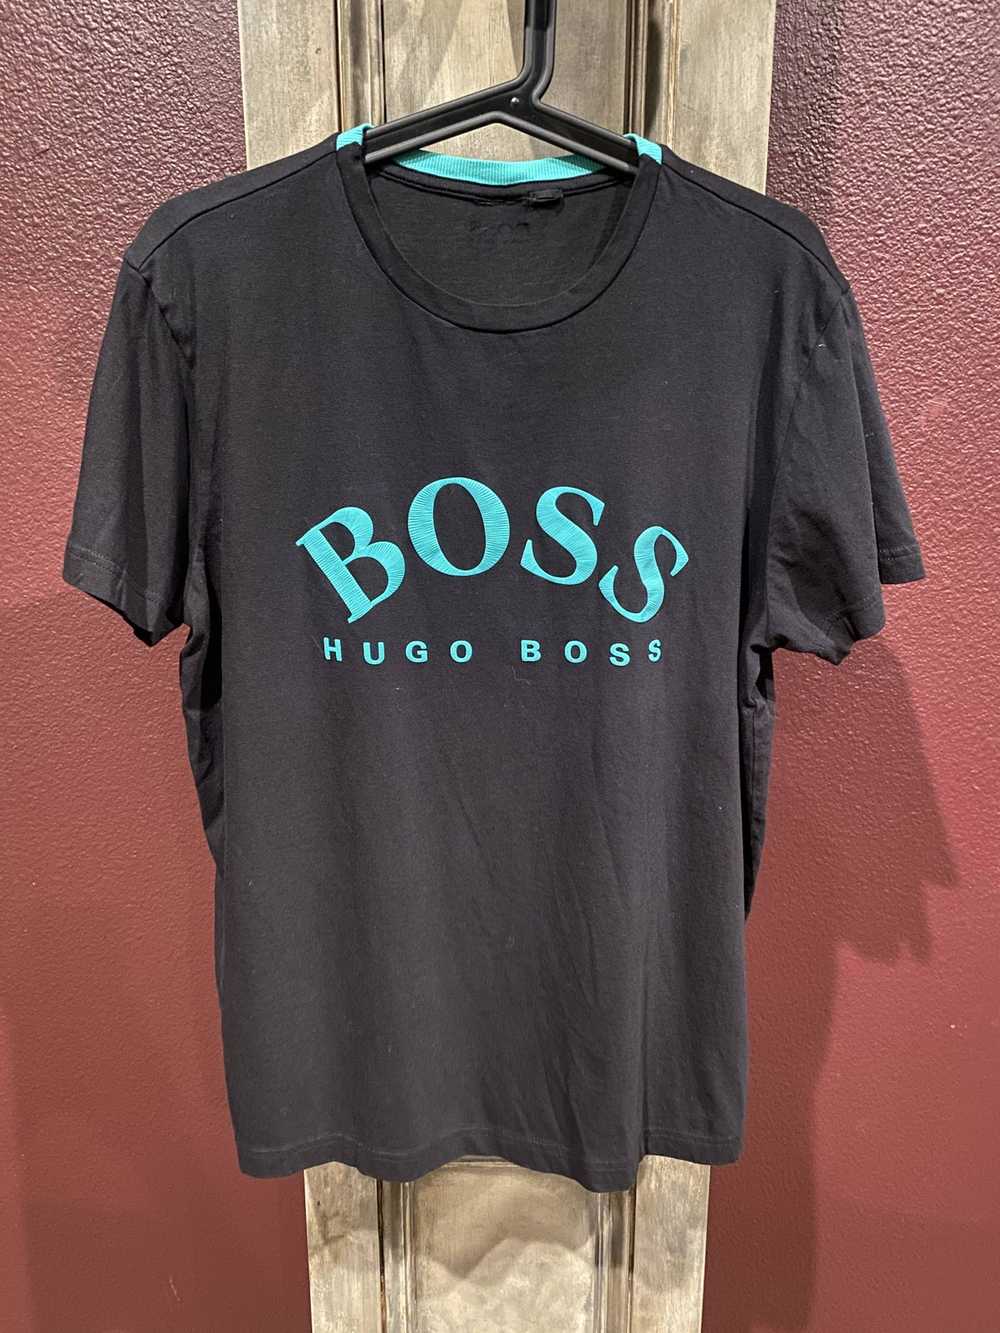 Hugo Boss Hugo Boss T-Shirt - image 1